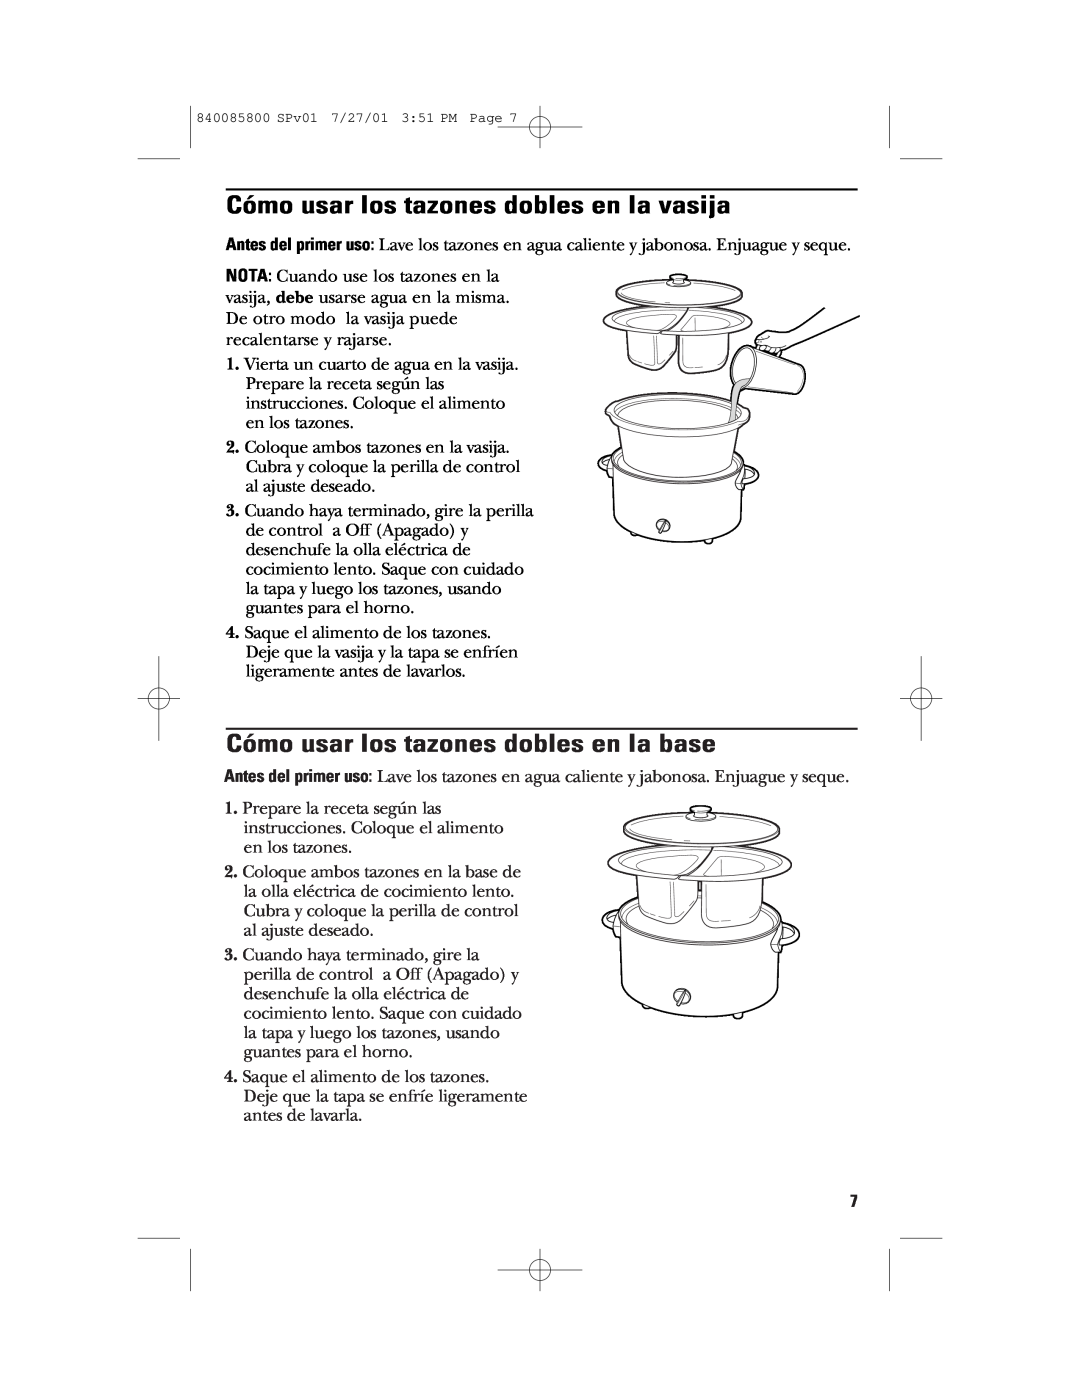 GE 840085800, 106851 manual Cómo usar los tazones dobles en la vasija, Cómo usar los tazones dobles en la base 